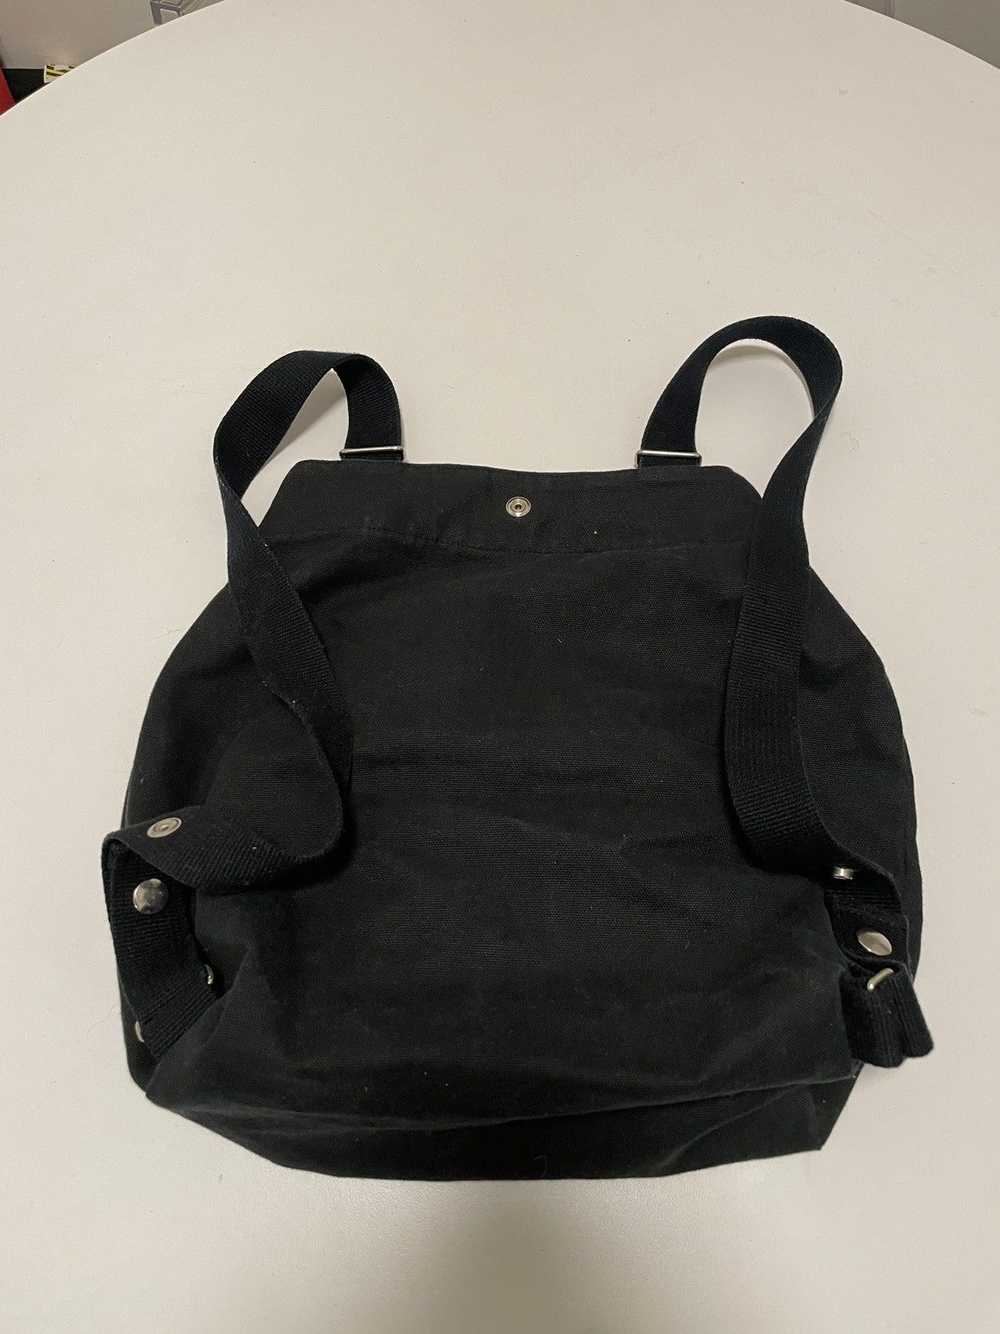 Yohji Yamamoto Y’s for Living Utility Backpack - image 2